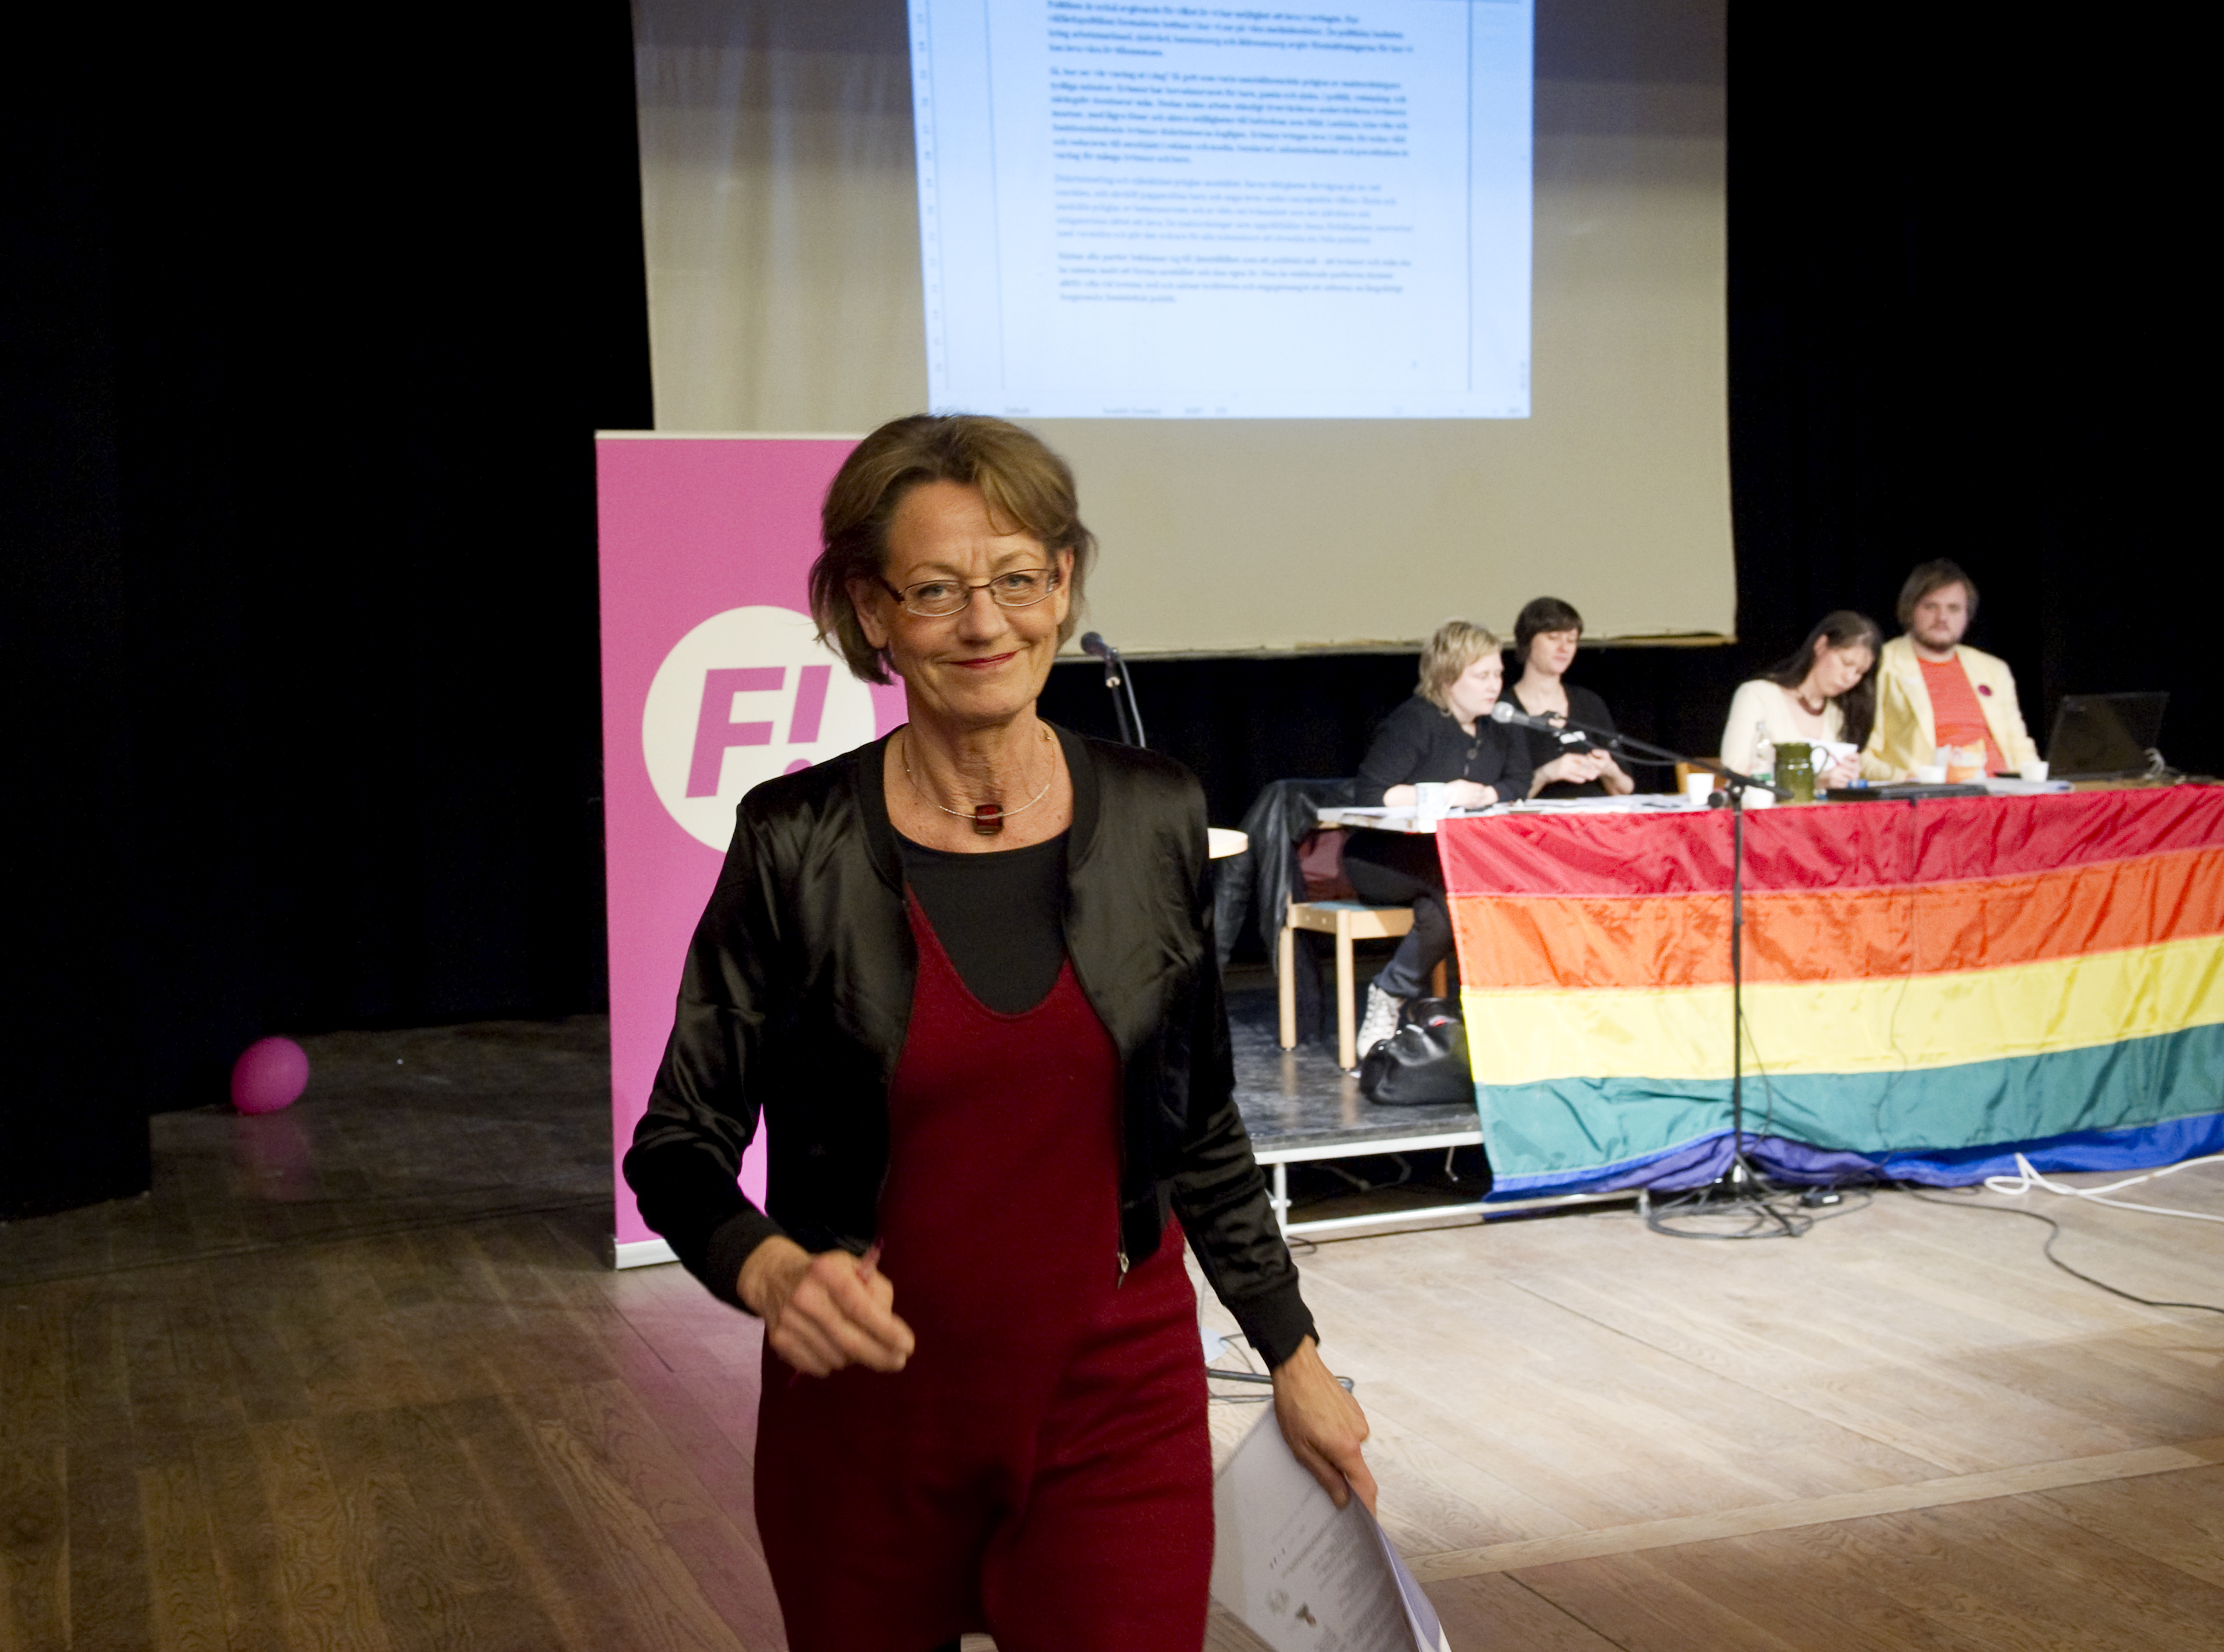 Arbetsmarknad, Lönediskriminering, Feministiskt initiativ, Gudrun Schyman, Riksdagsvalet 2010